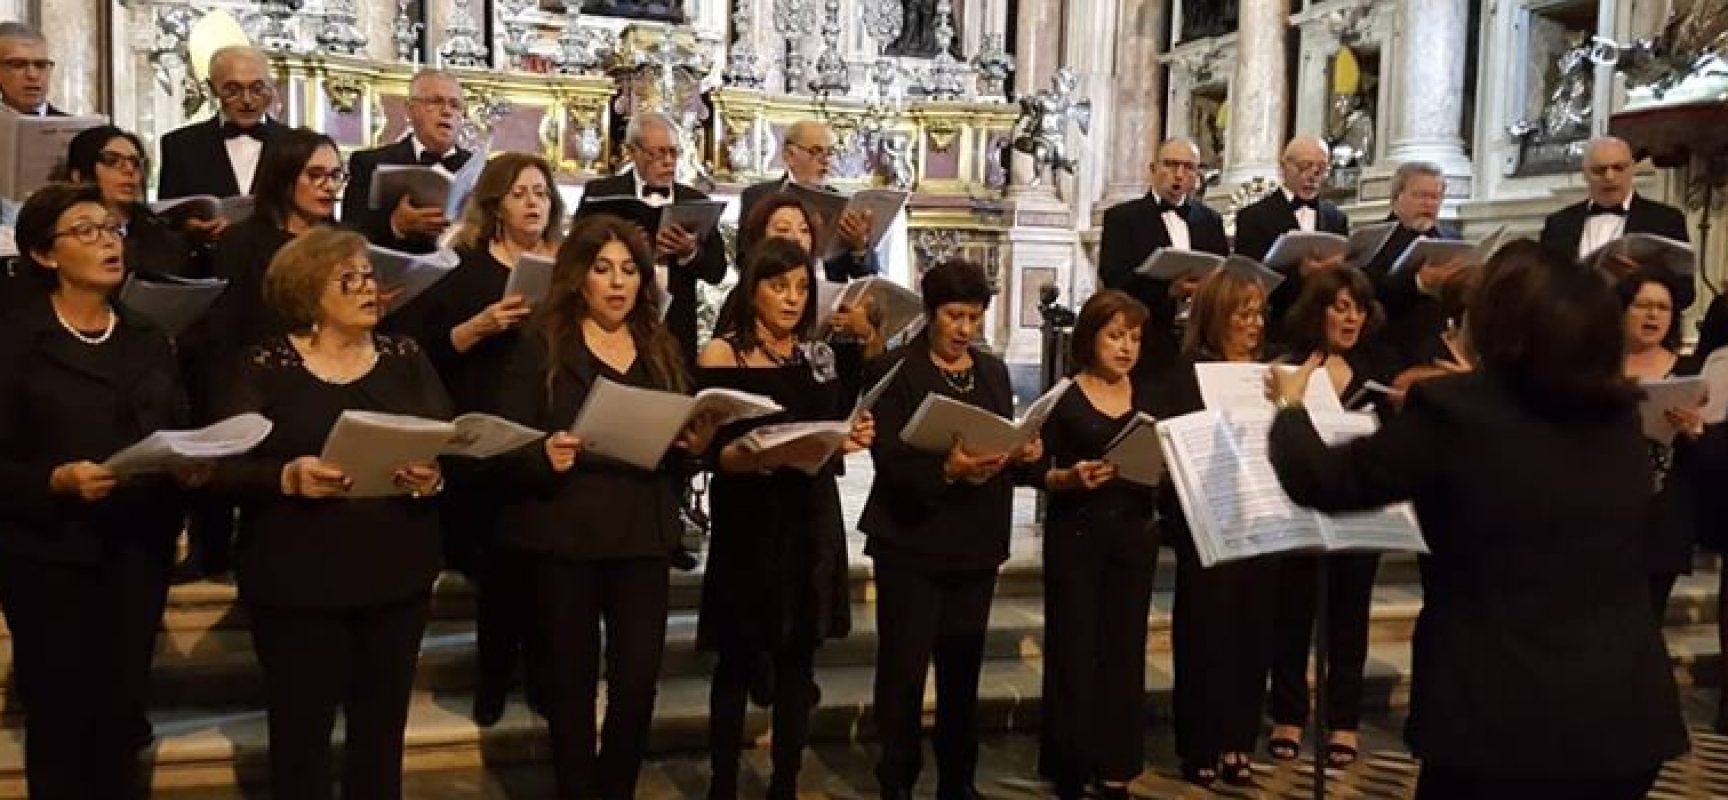 Coro Polifonico “New Chorus” e “La Canigghie” tra i protagonisti della festa patronale